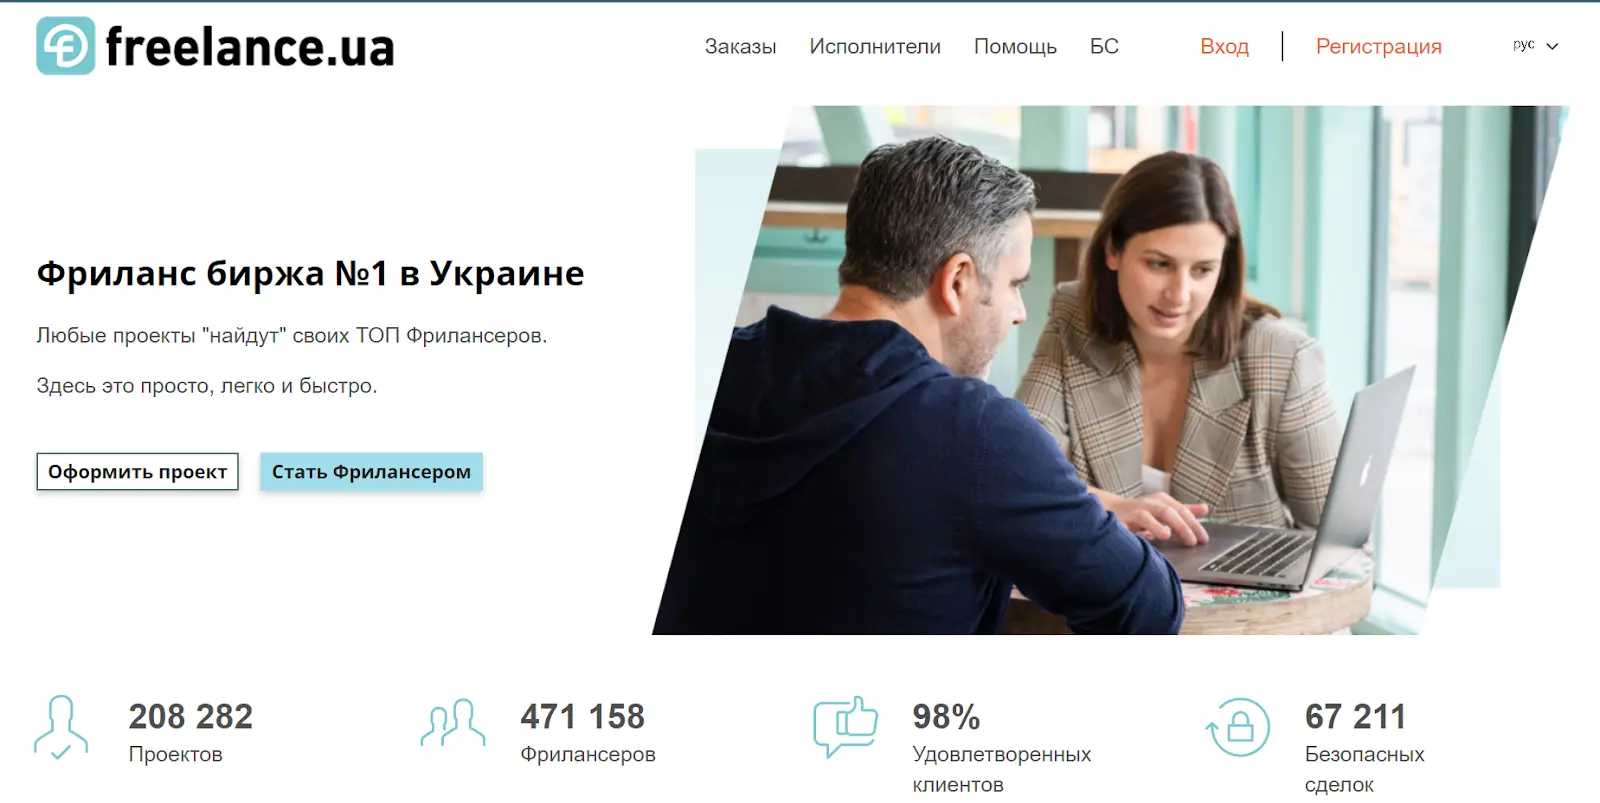 Украинская биржа для фрилансеров Freelance.ua